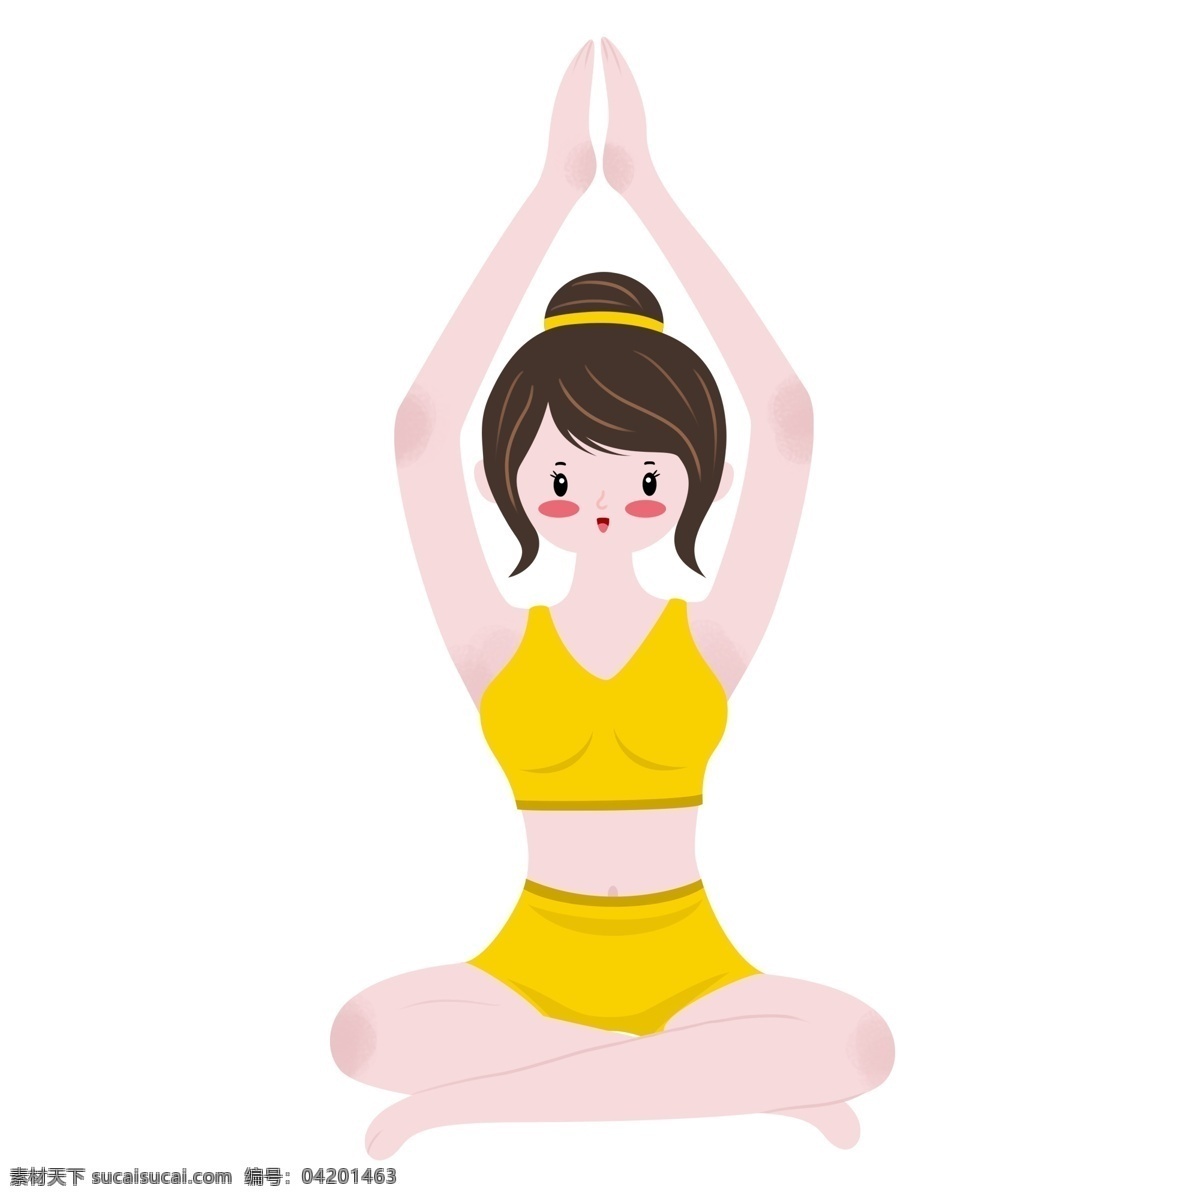 卡通 手绘 做 瑜伽 女孩 简约 运动 做瑜伽 减肥 有氧运动 插画 人物